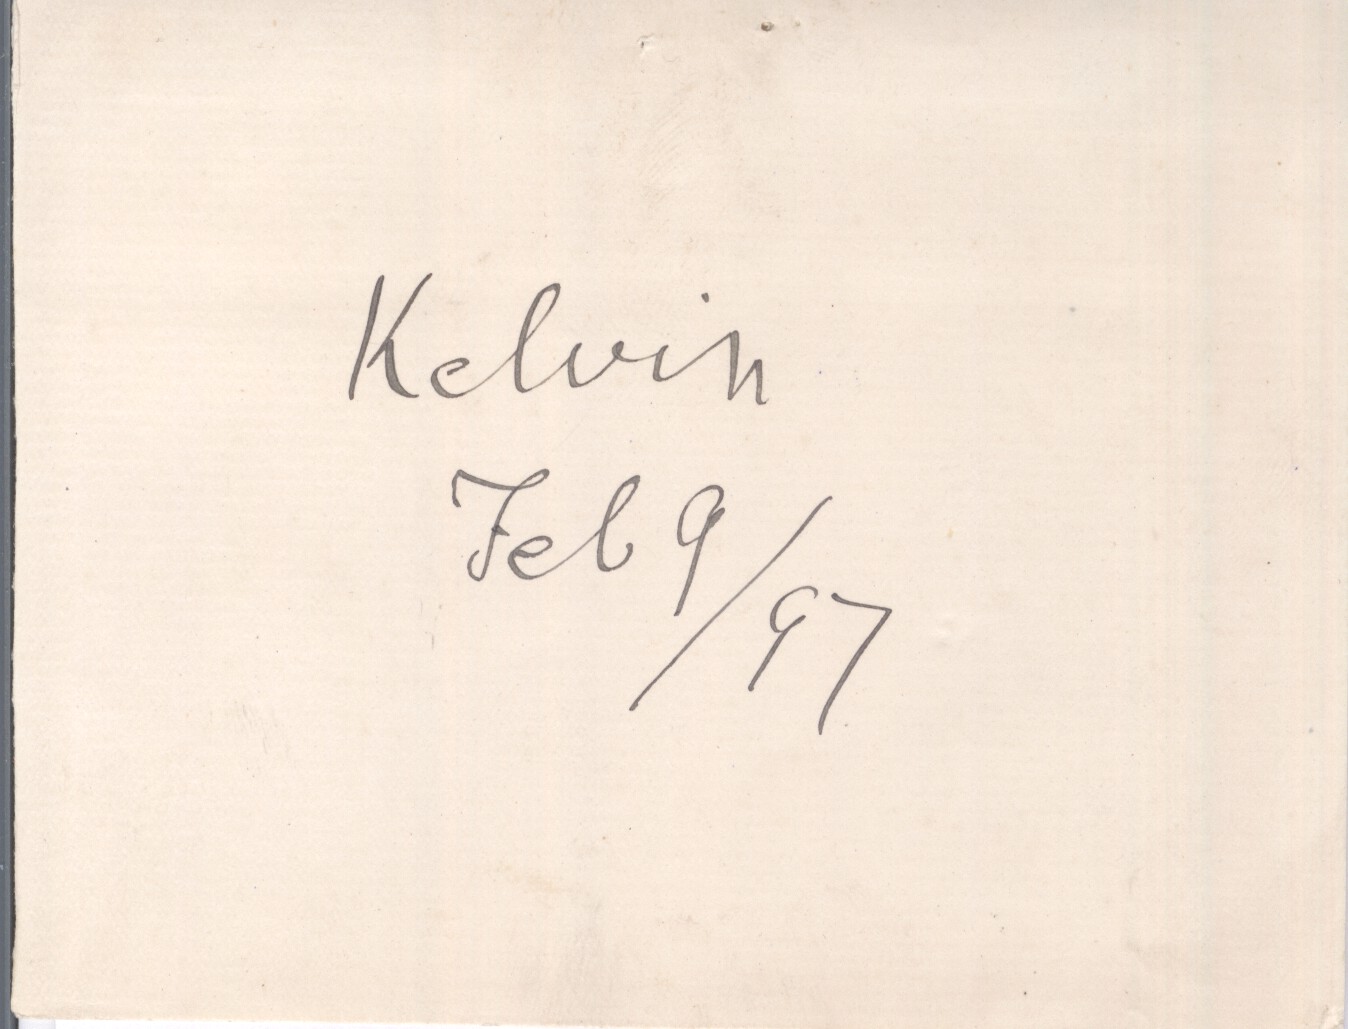 KELVIN-30522-1.jpg